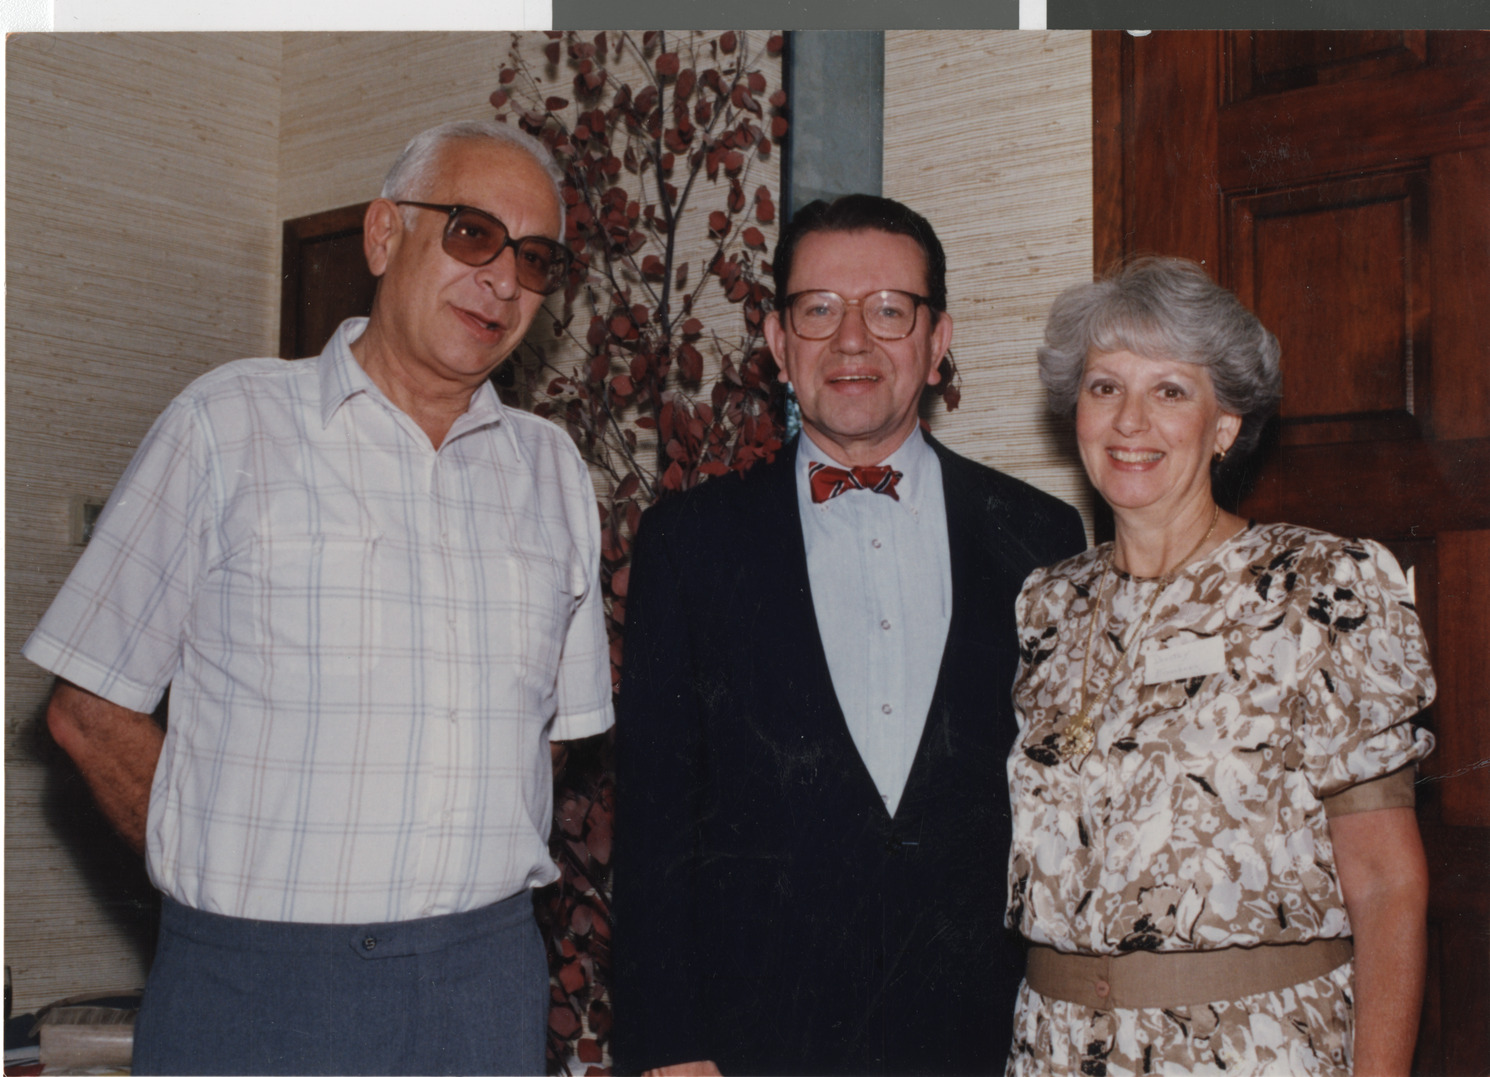 Senator Paul Simon, 1989